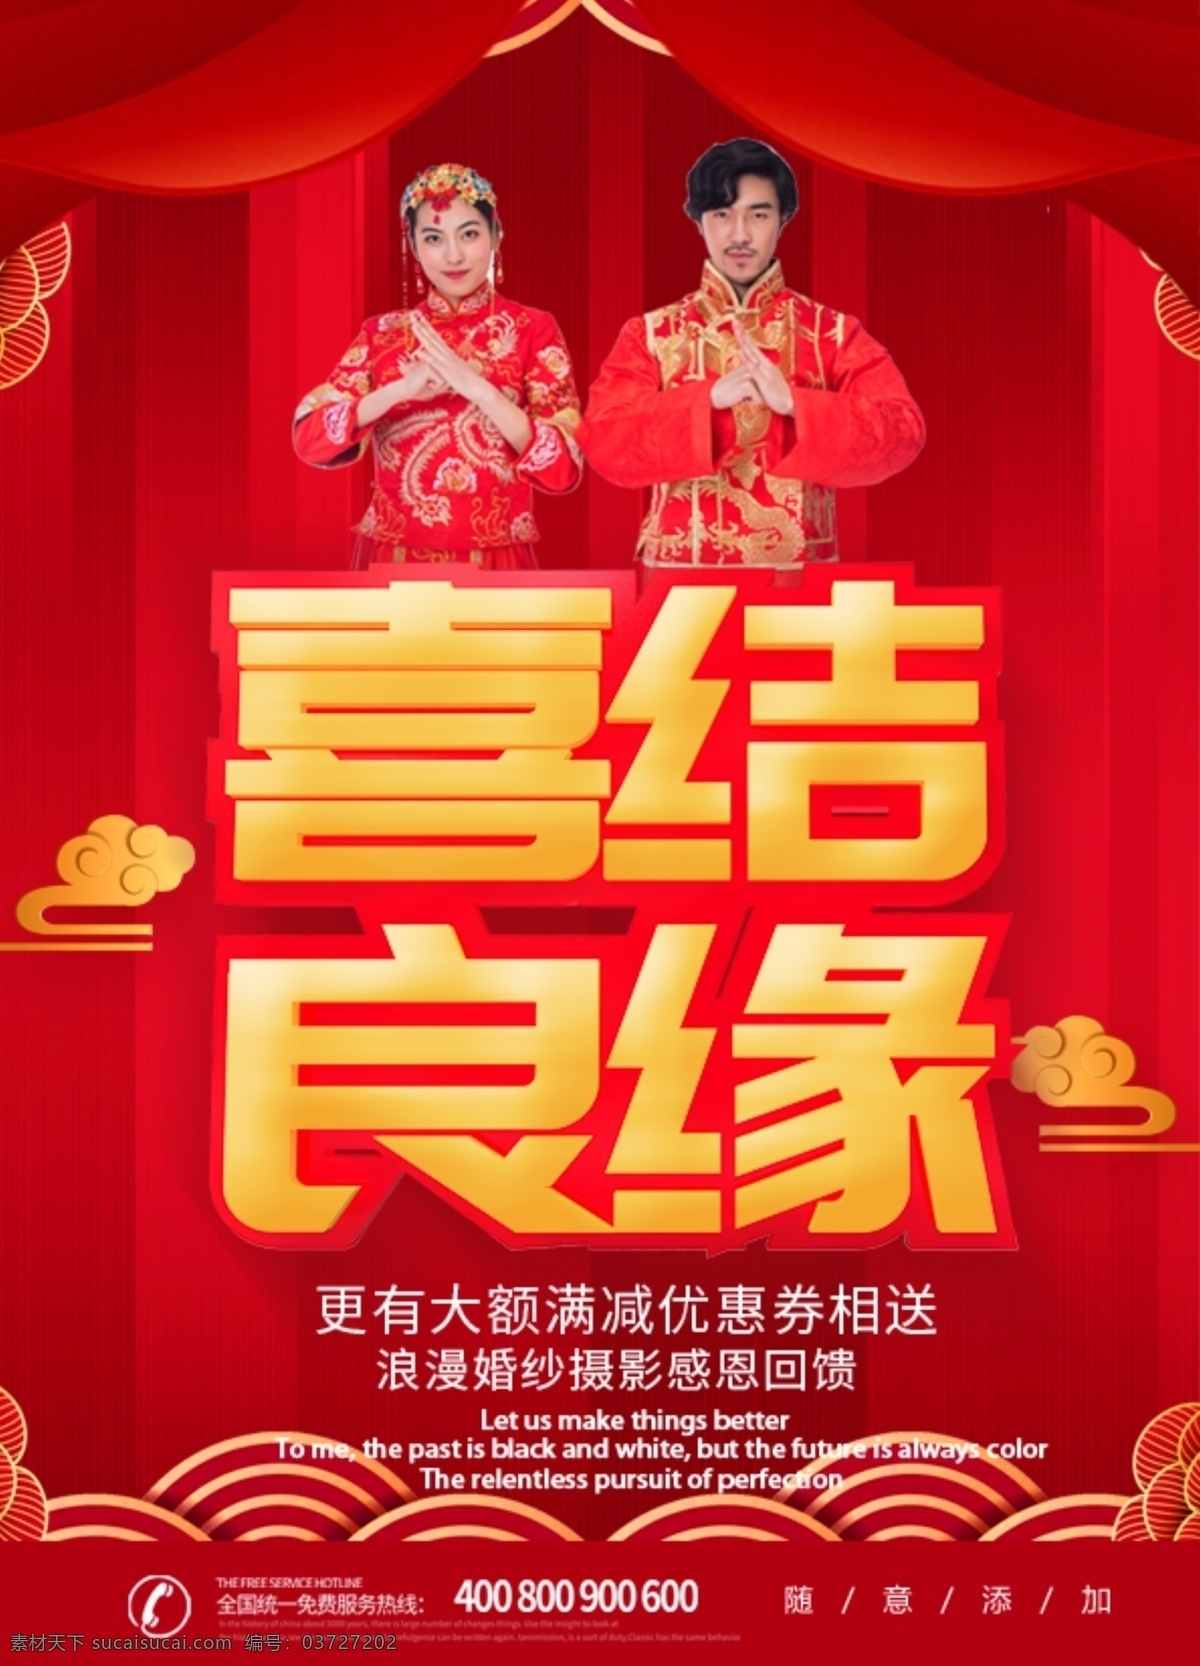 红色 大气 喜庆 中国 风 婚礼 宣传单 dm 中国风 dm1